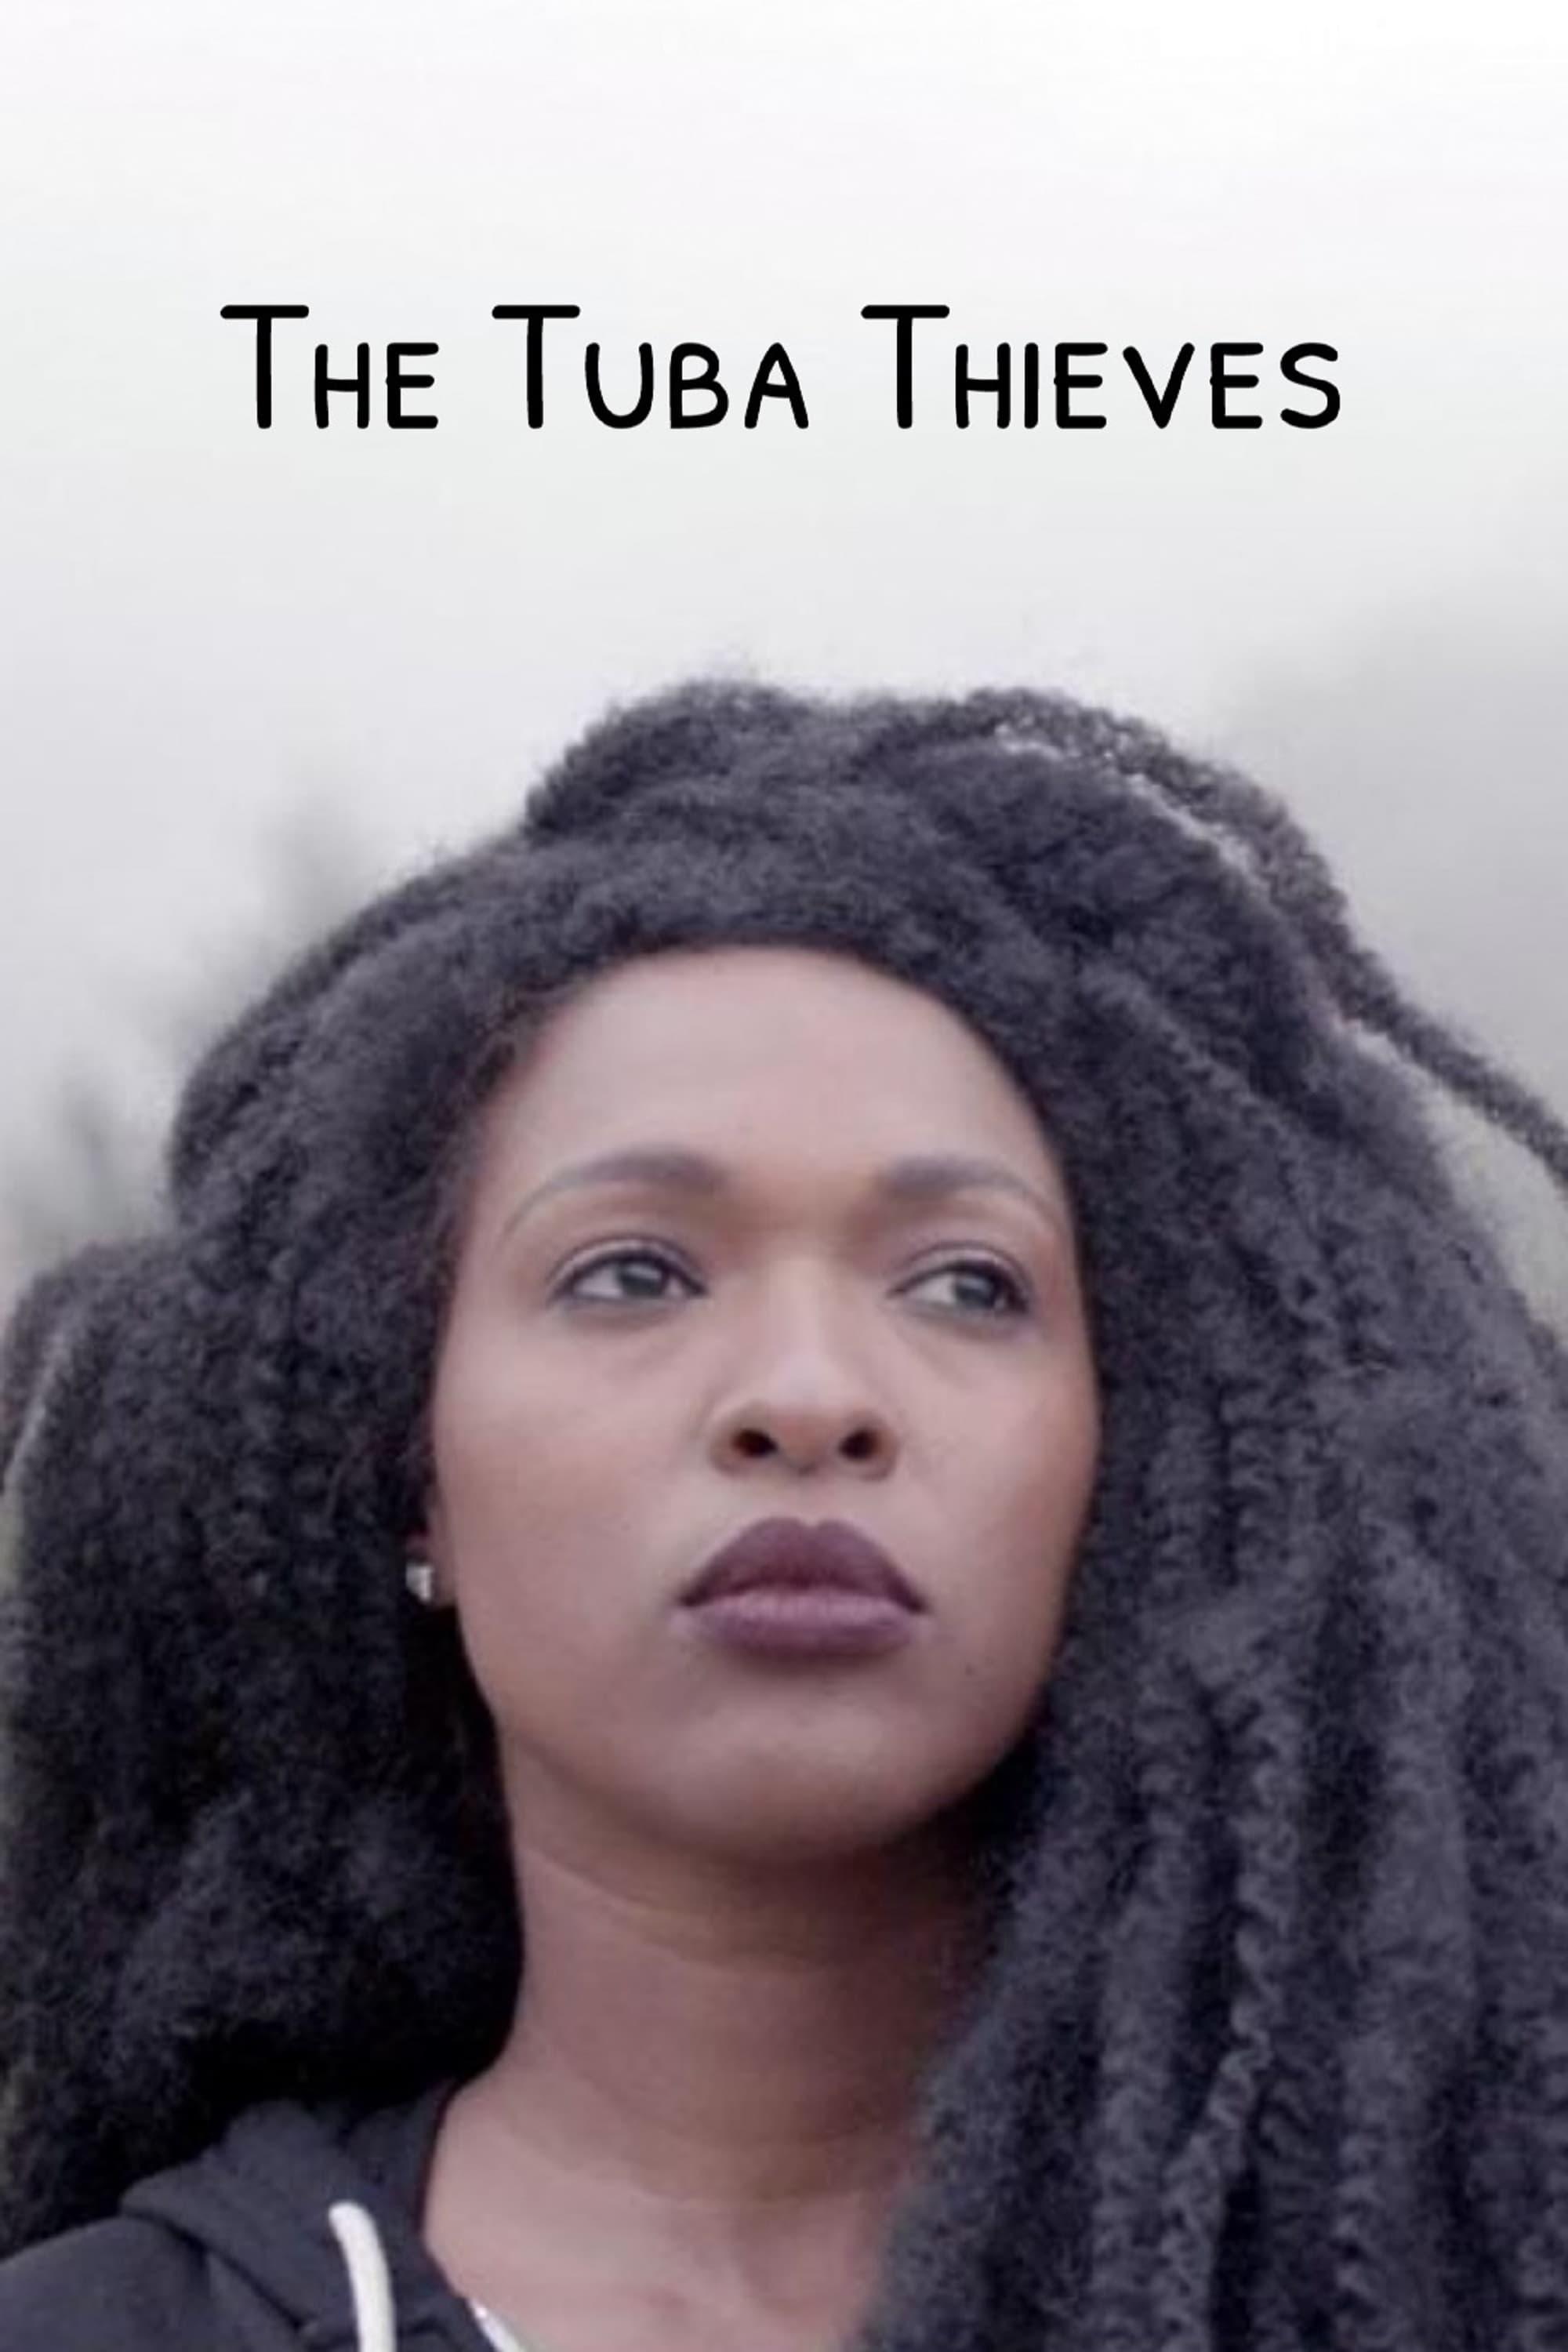 The Tuba Thieves poster